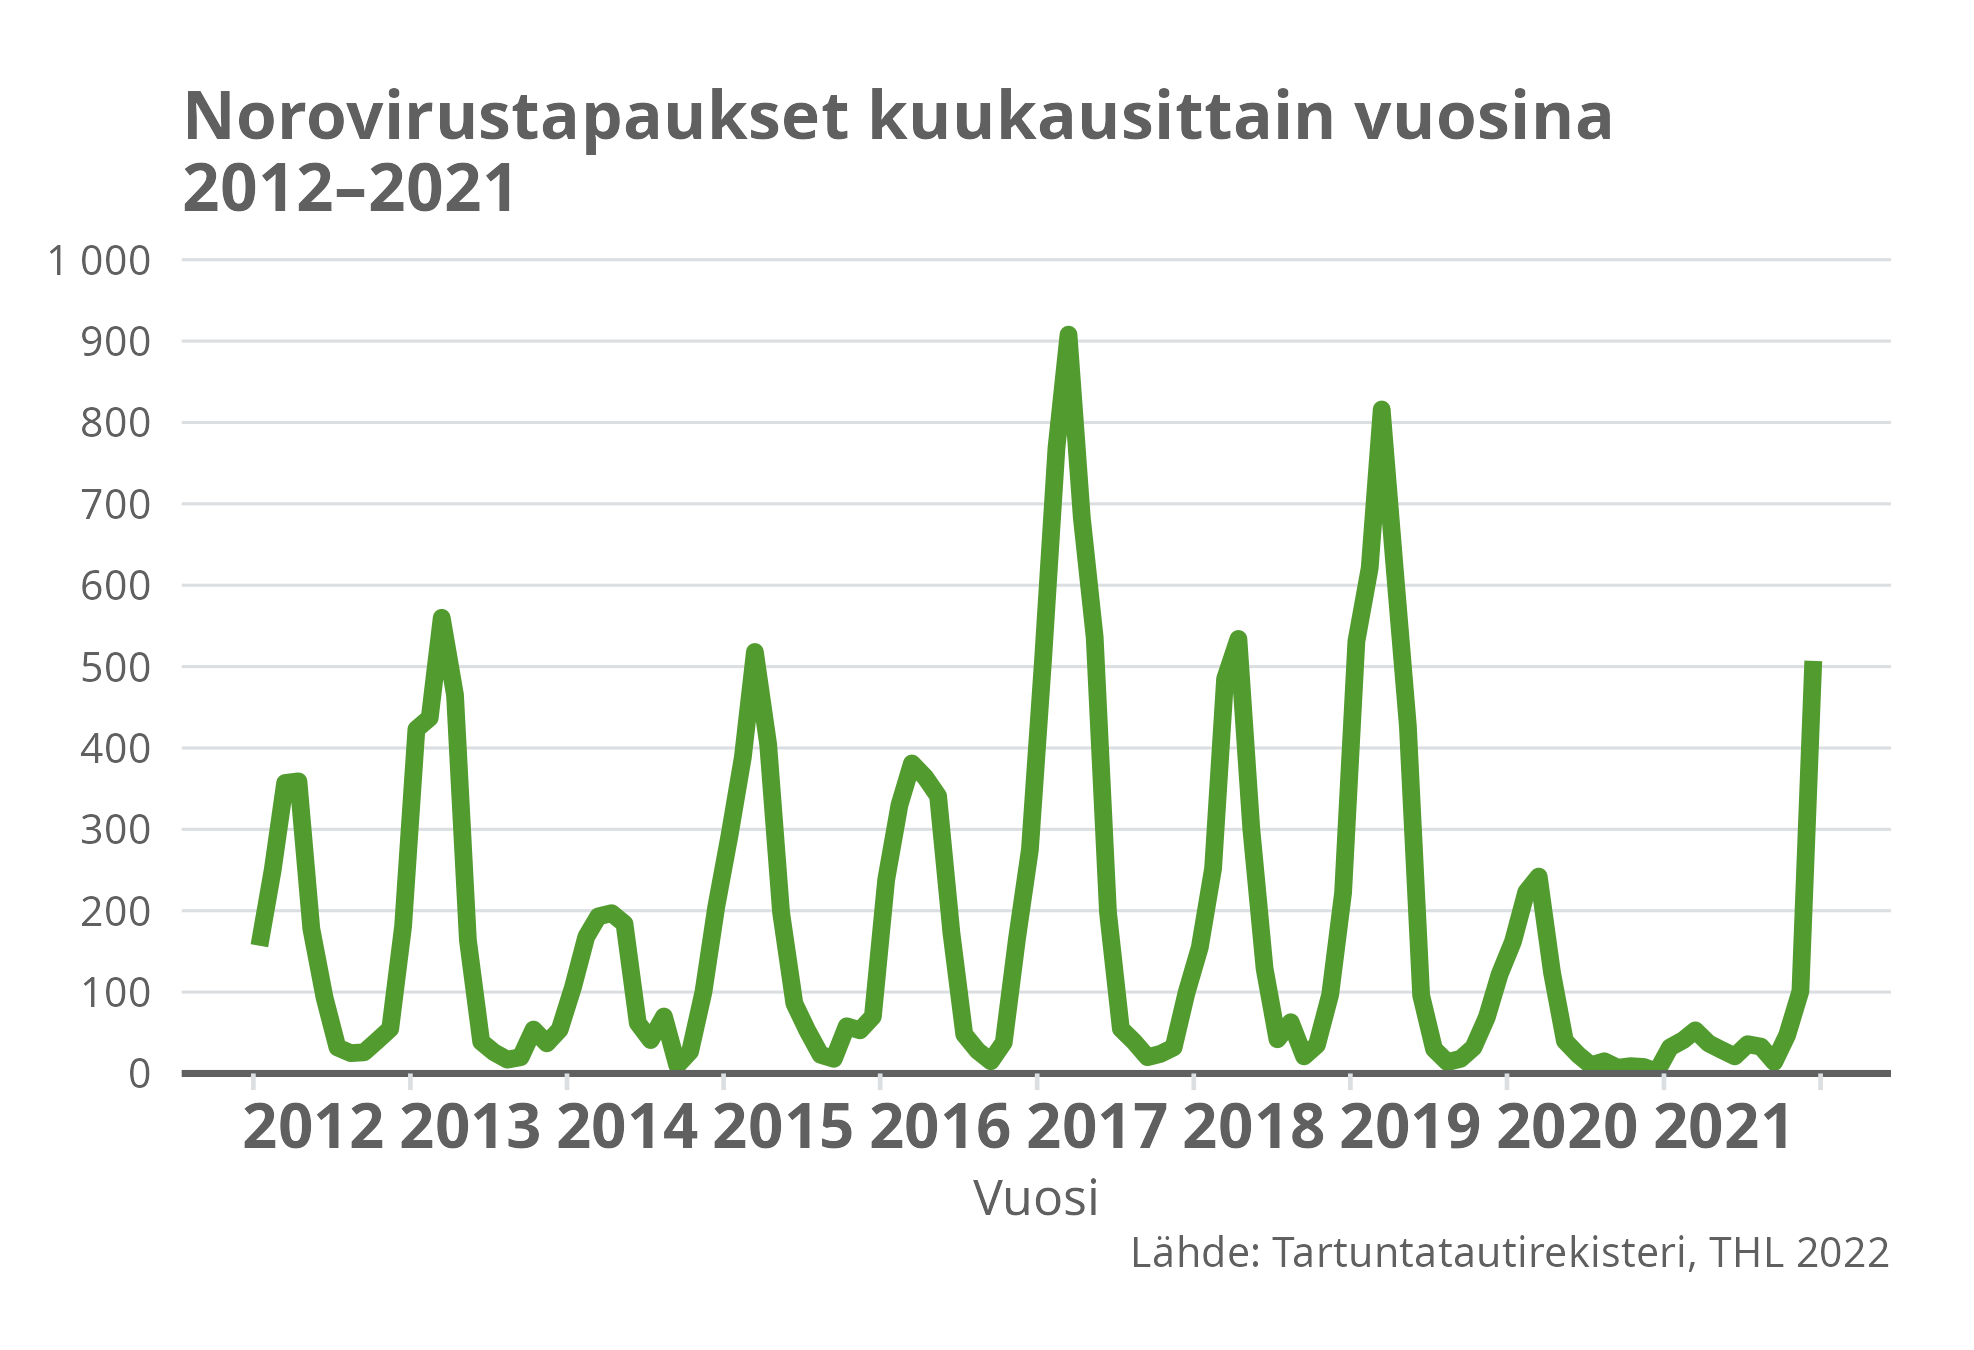 Norovirustapaukset kuukausittain vuosina 2012-2021.